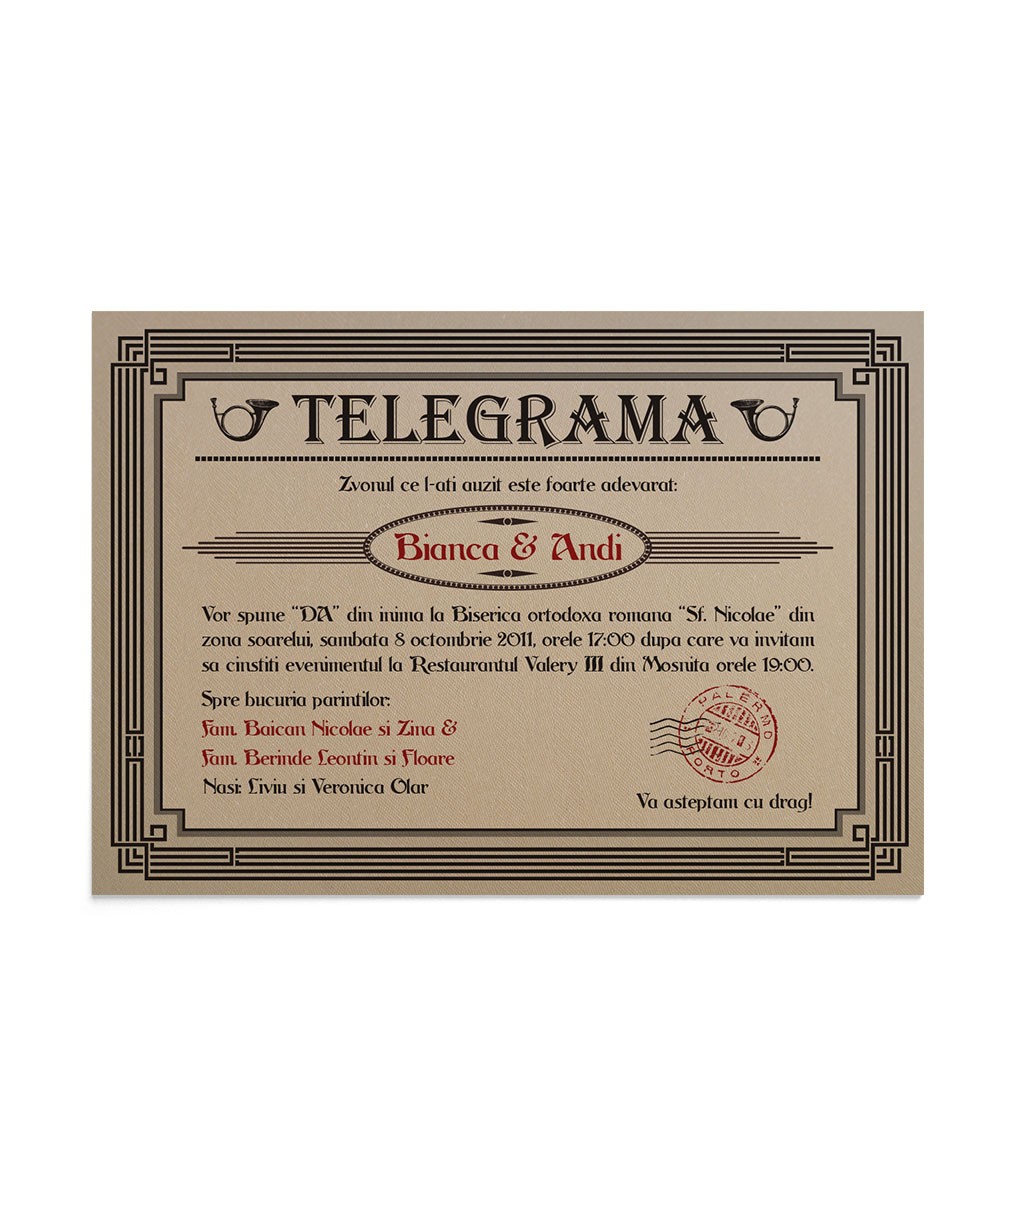 Invitatie Vintage Telegram